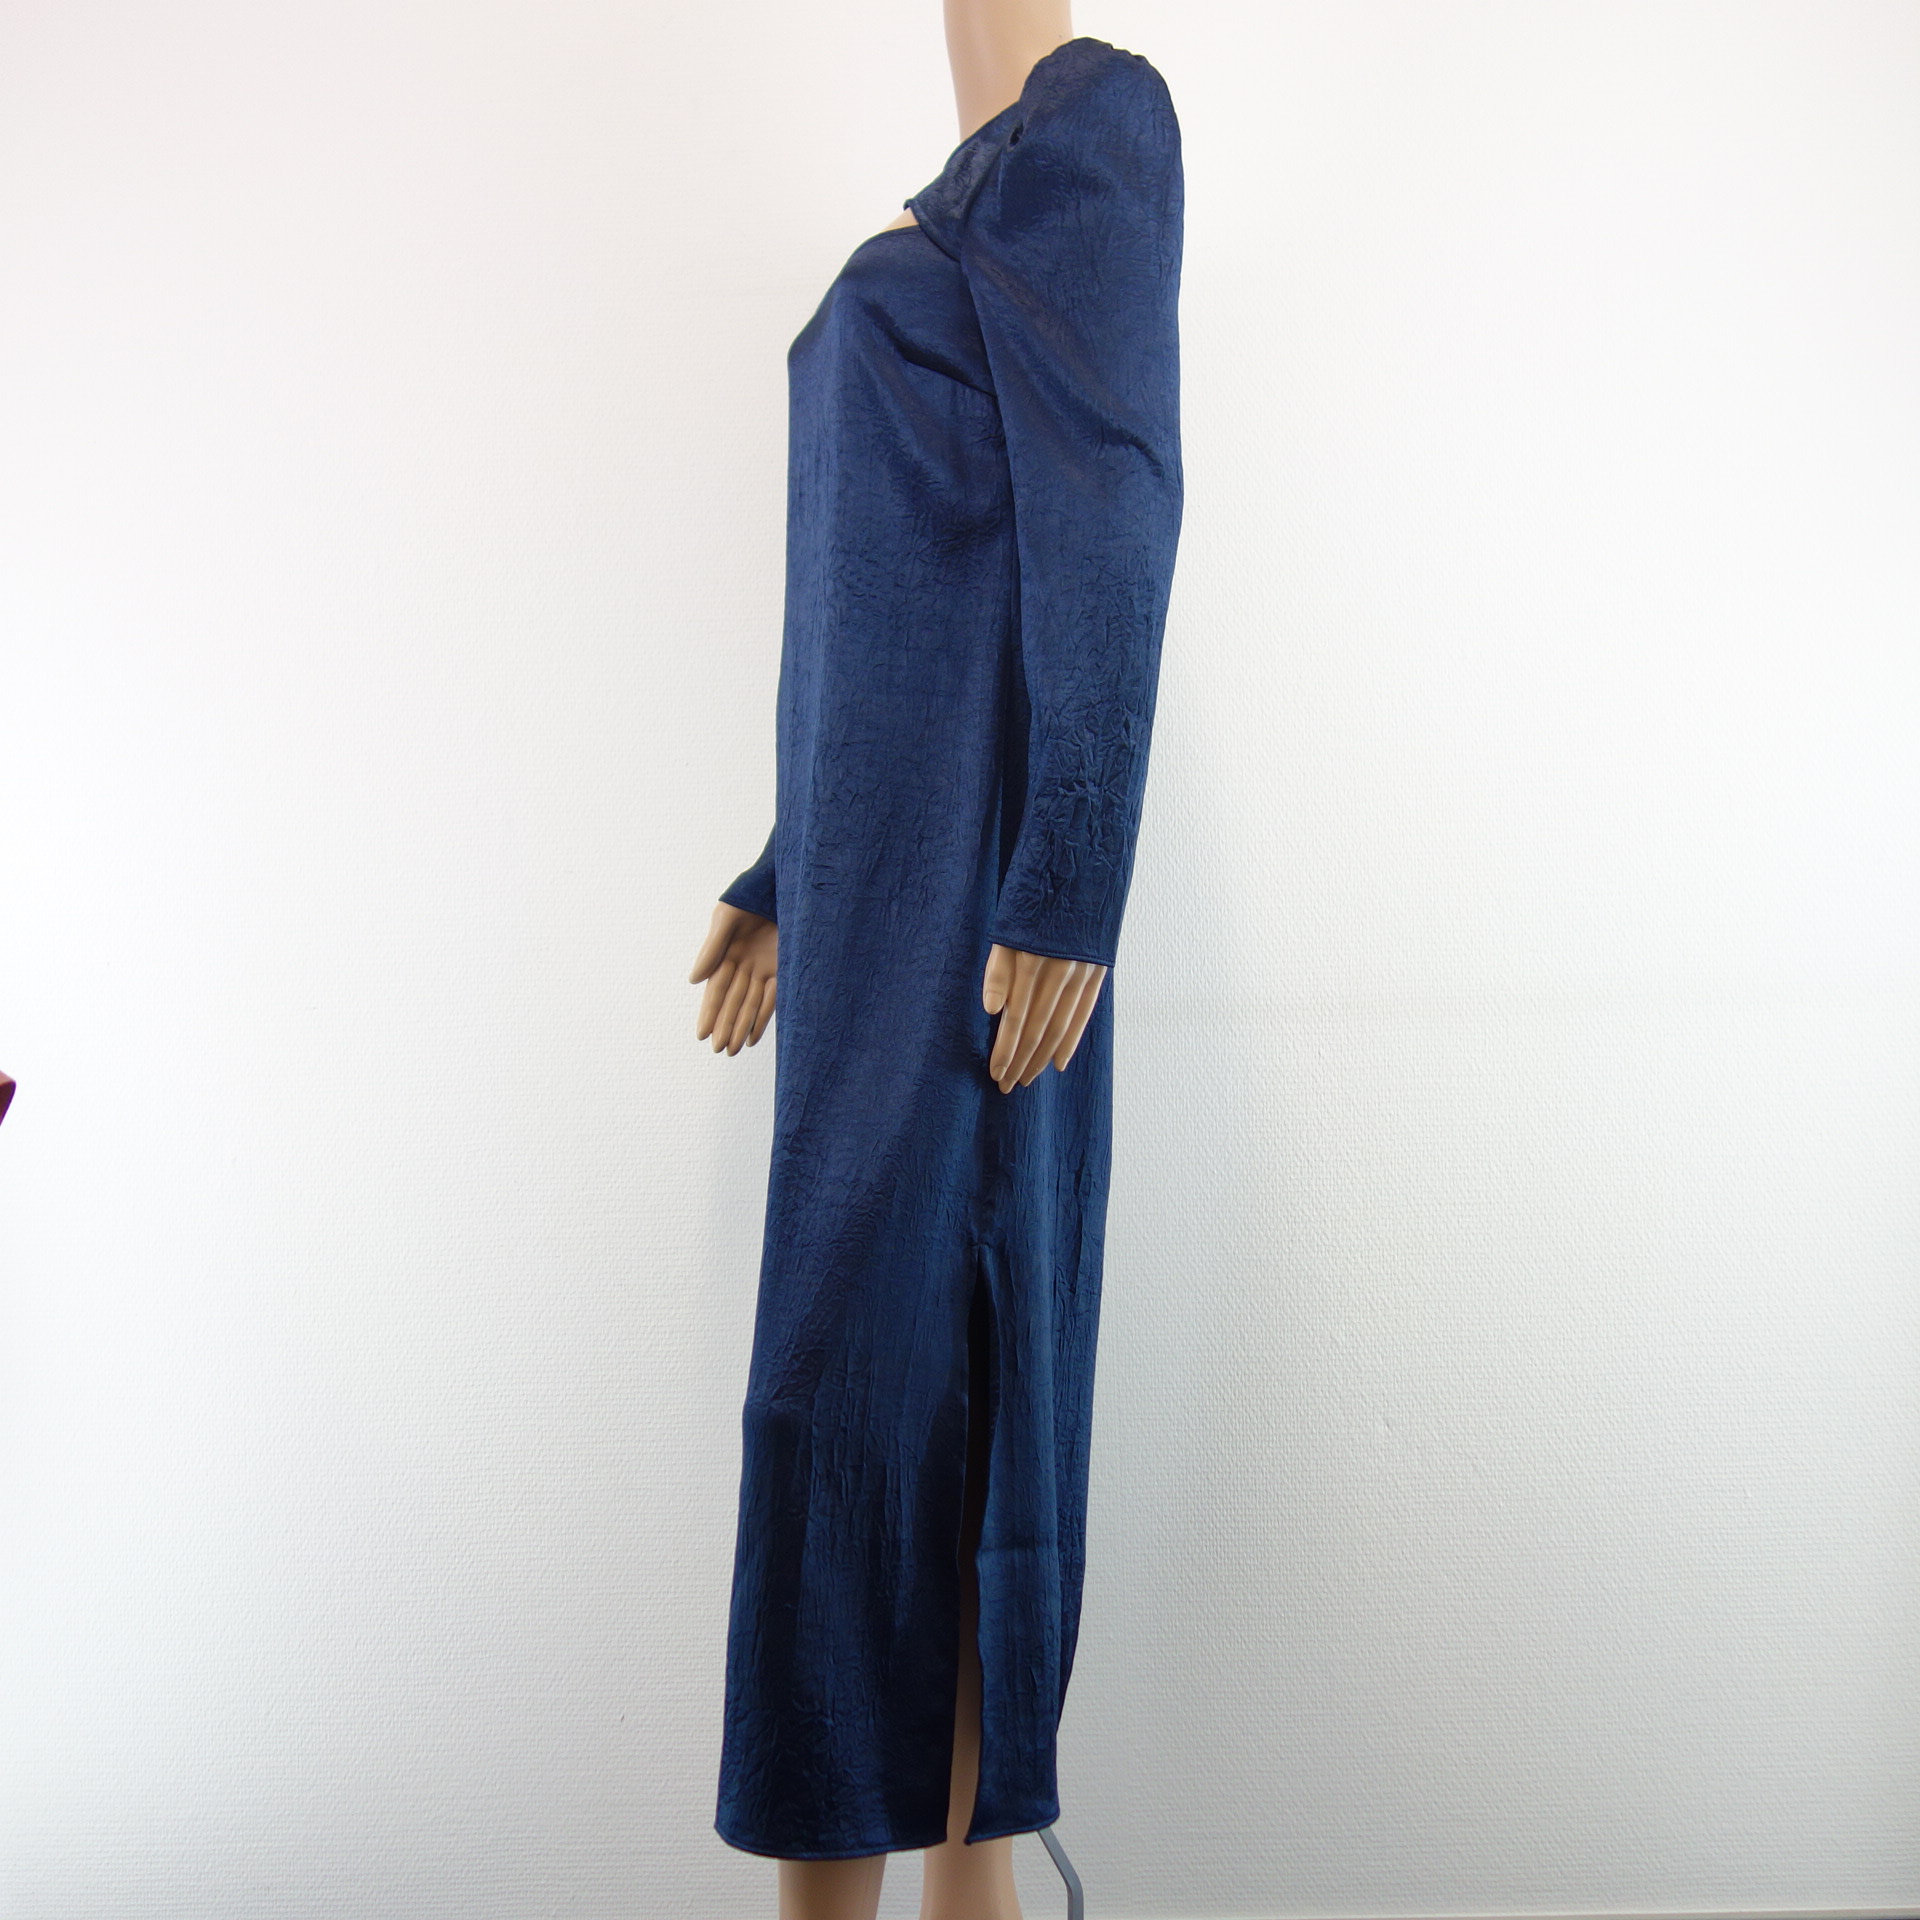 BAUM UND PFERDGARTEN Damen Kleid Abendkleid Blau Model ANETO Cut Off